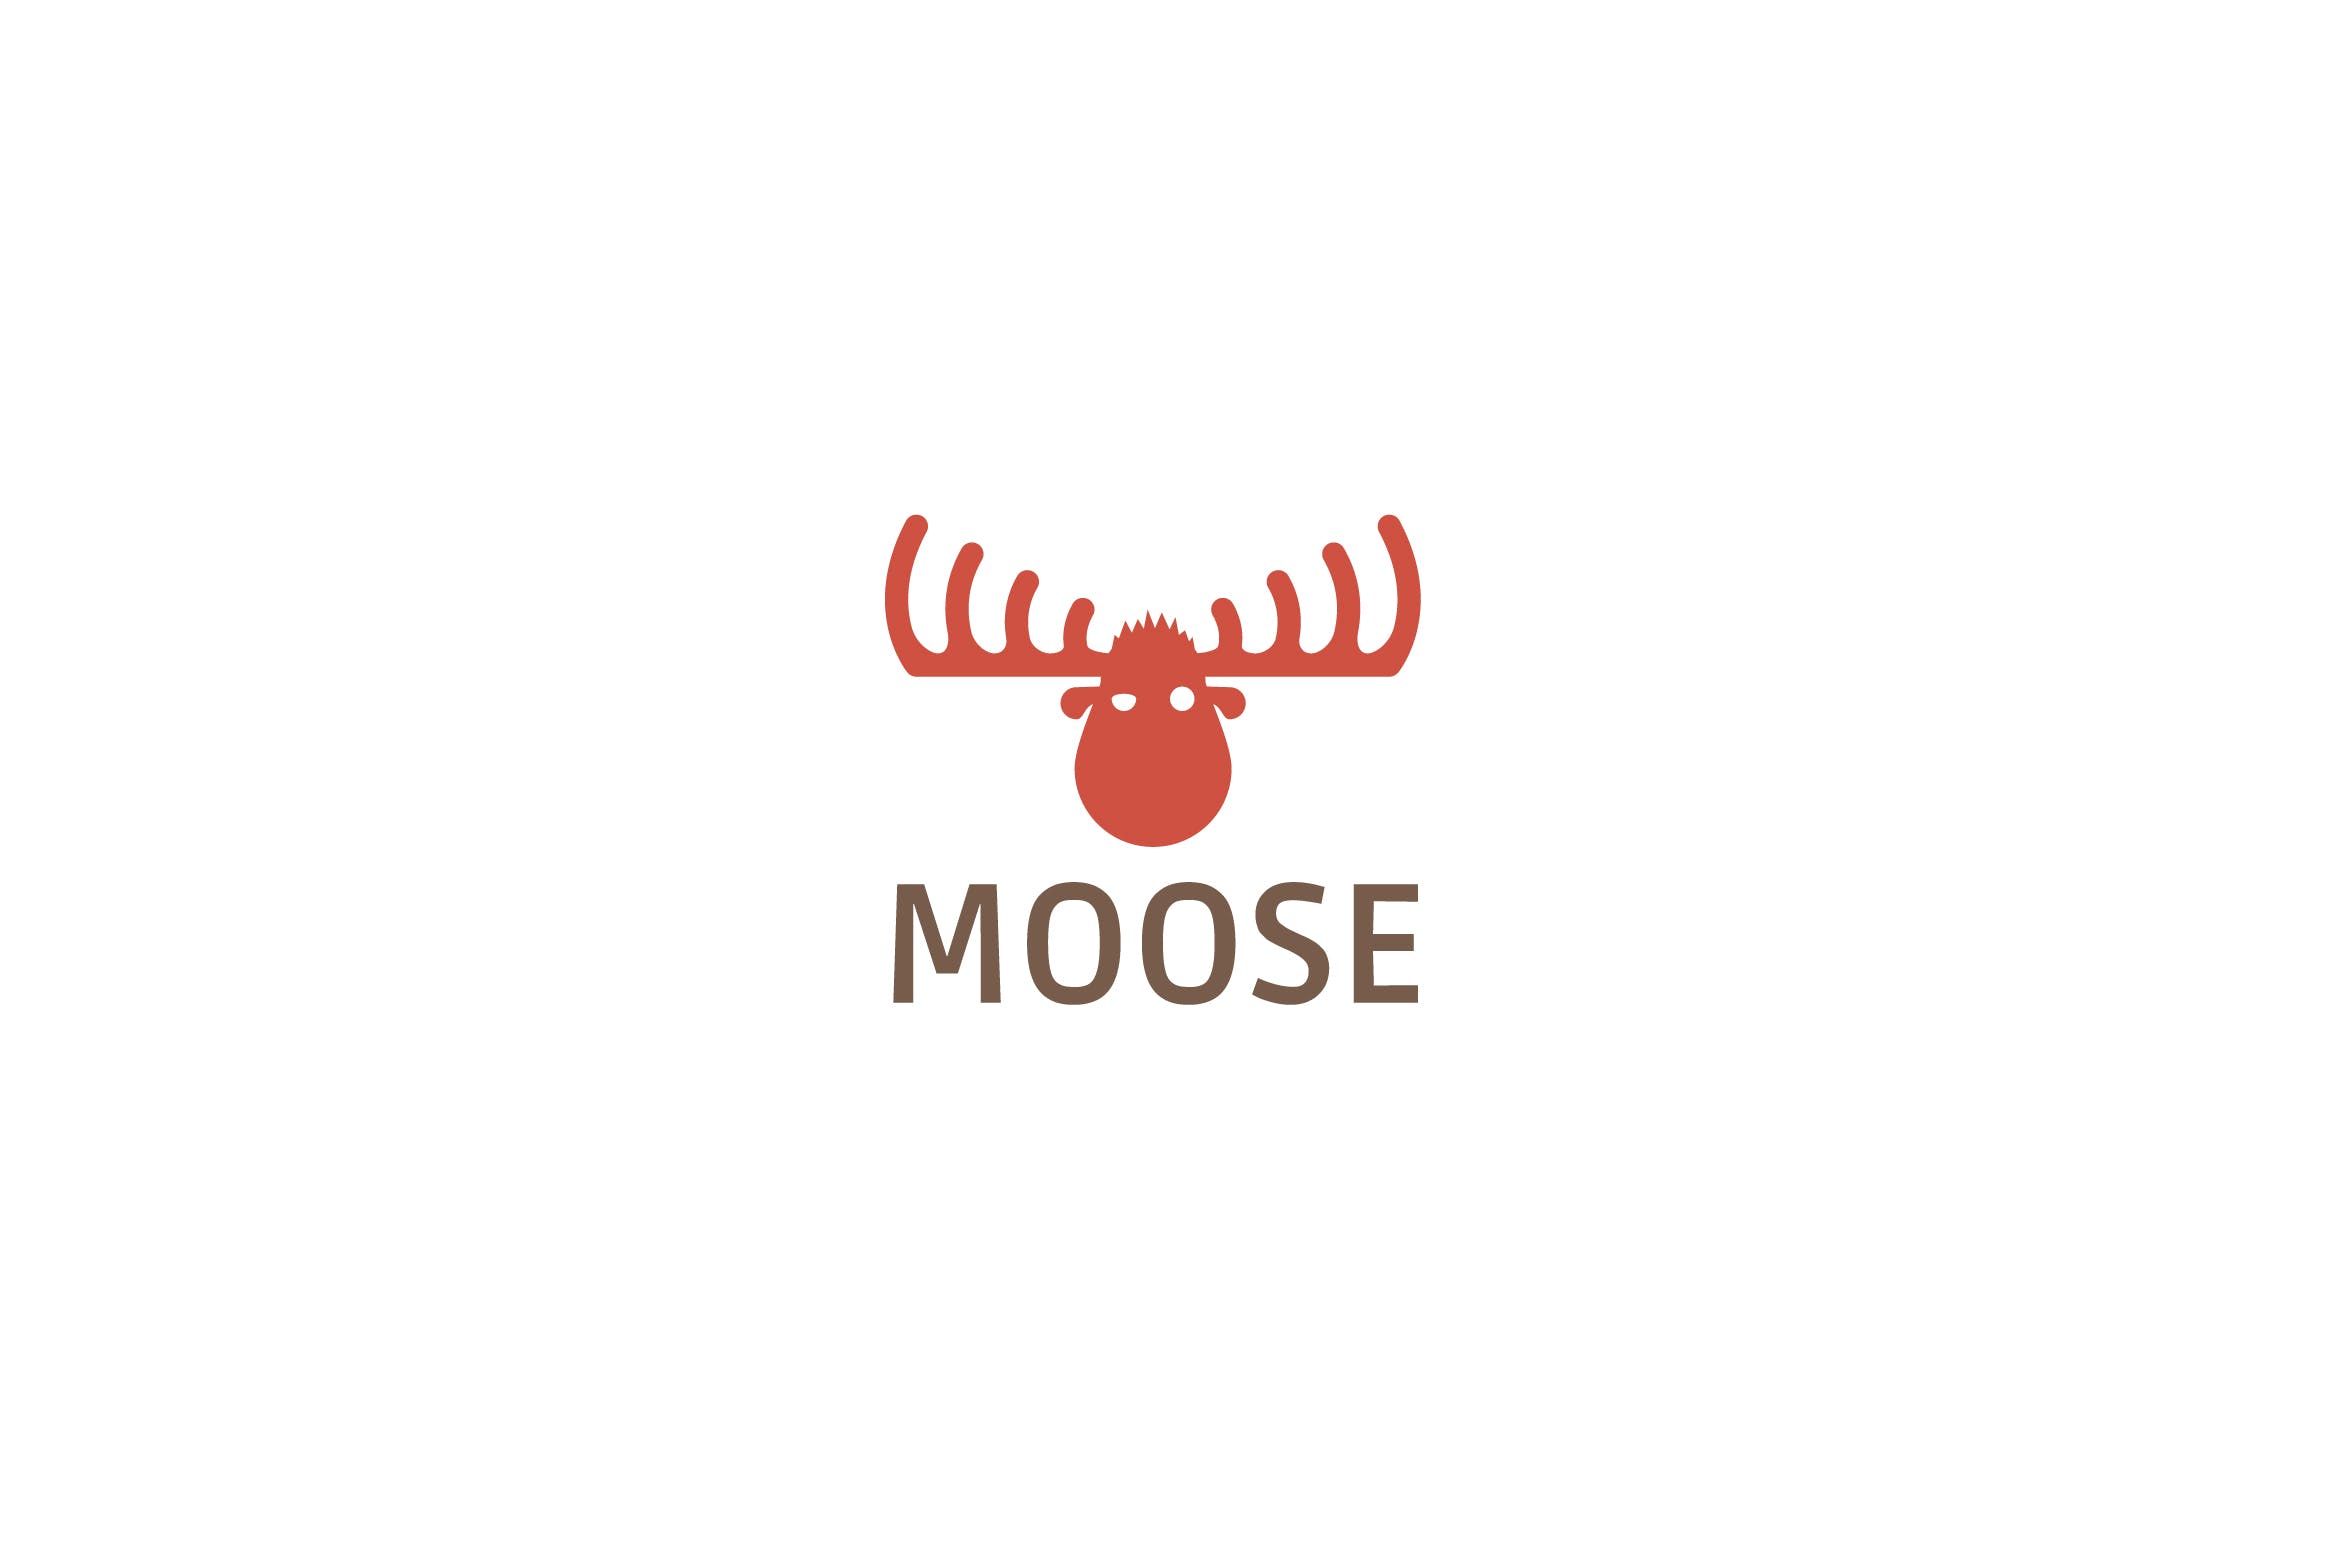 驼鹿图形Logo设计素材库精选模板 Moose logo template插图